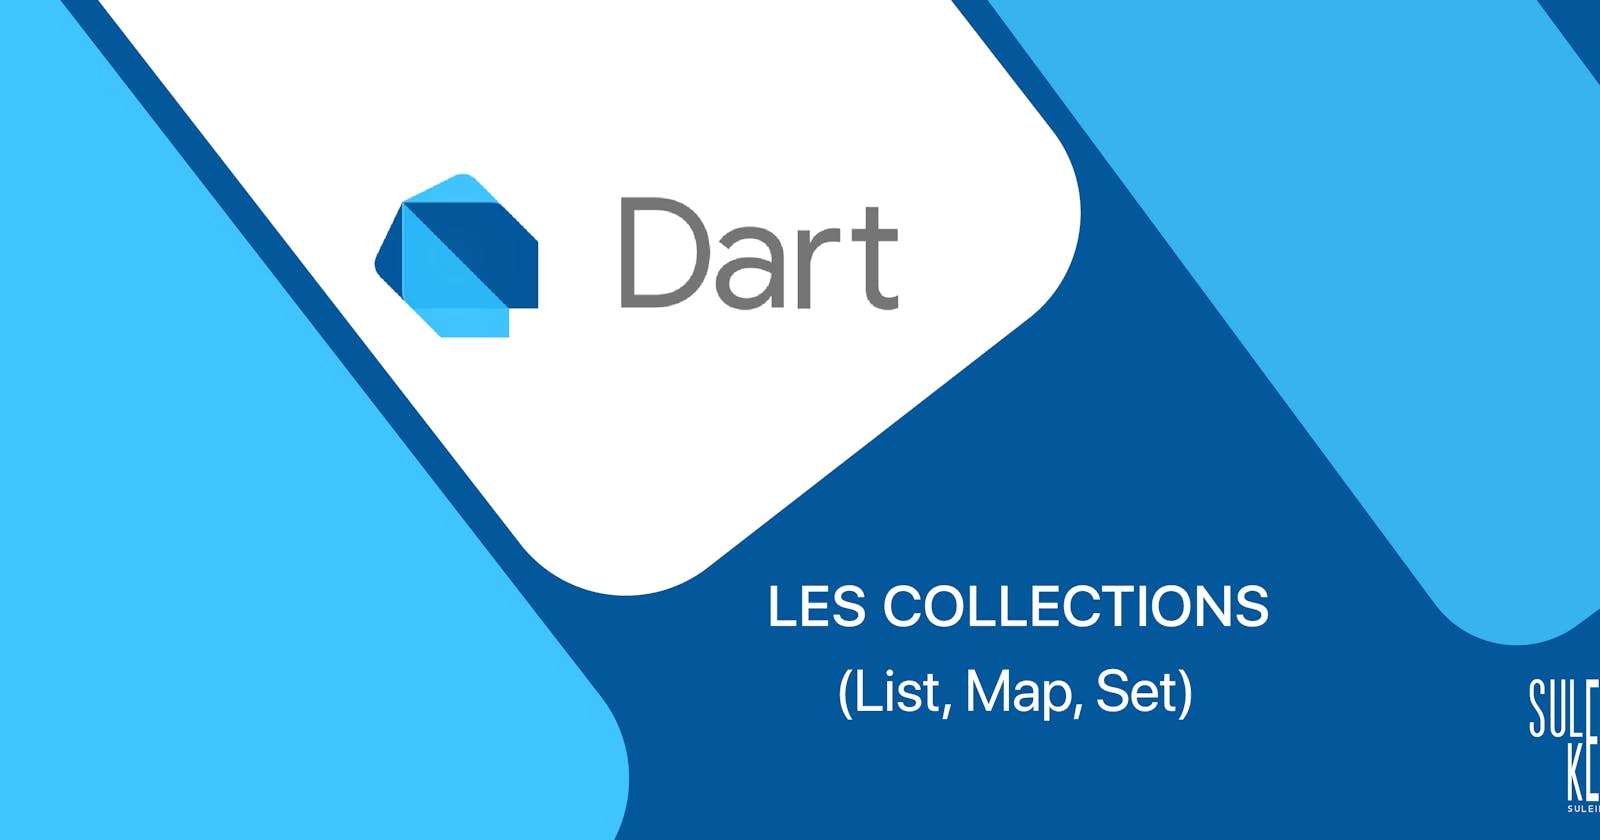 Les collections en Dart